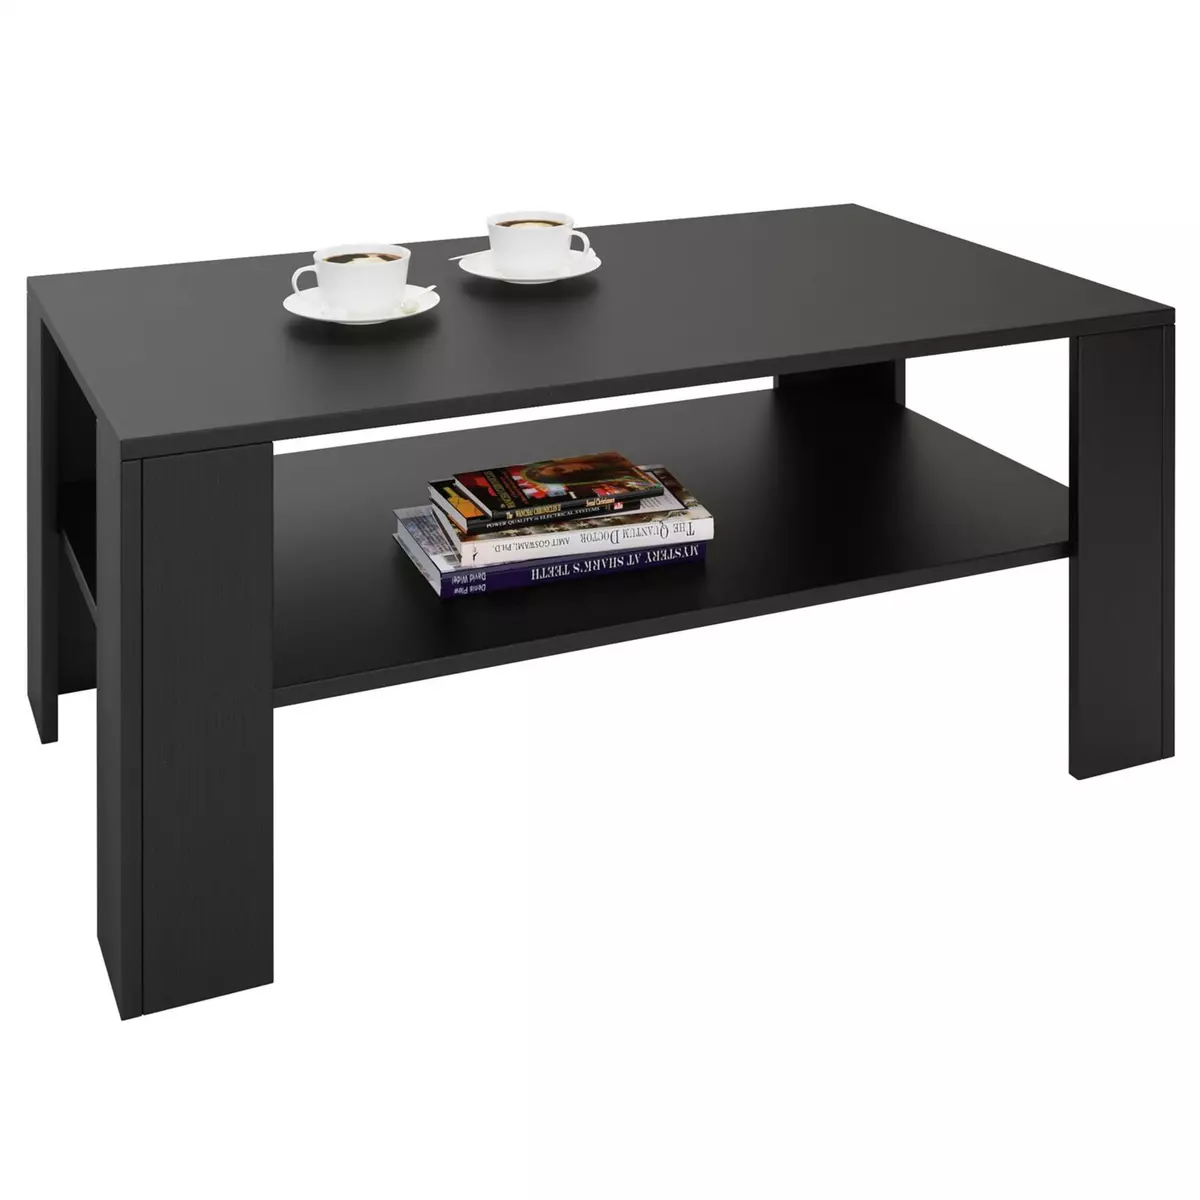 IDIMEX Table basse LORIENT, table de salon rectangulaire avec 1 étagère espace de rangement ouvert, en mélaminé noir mat